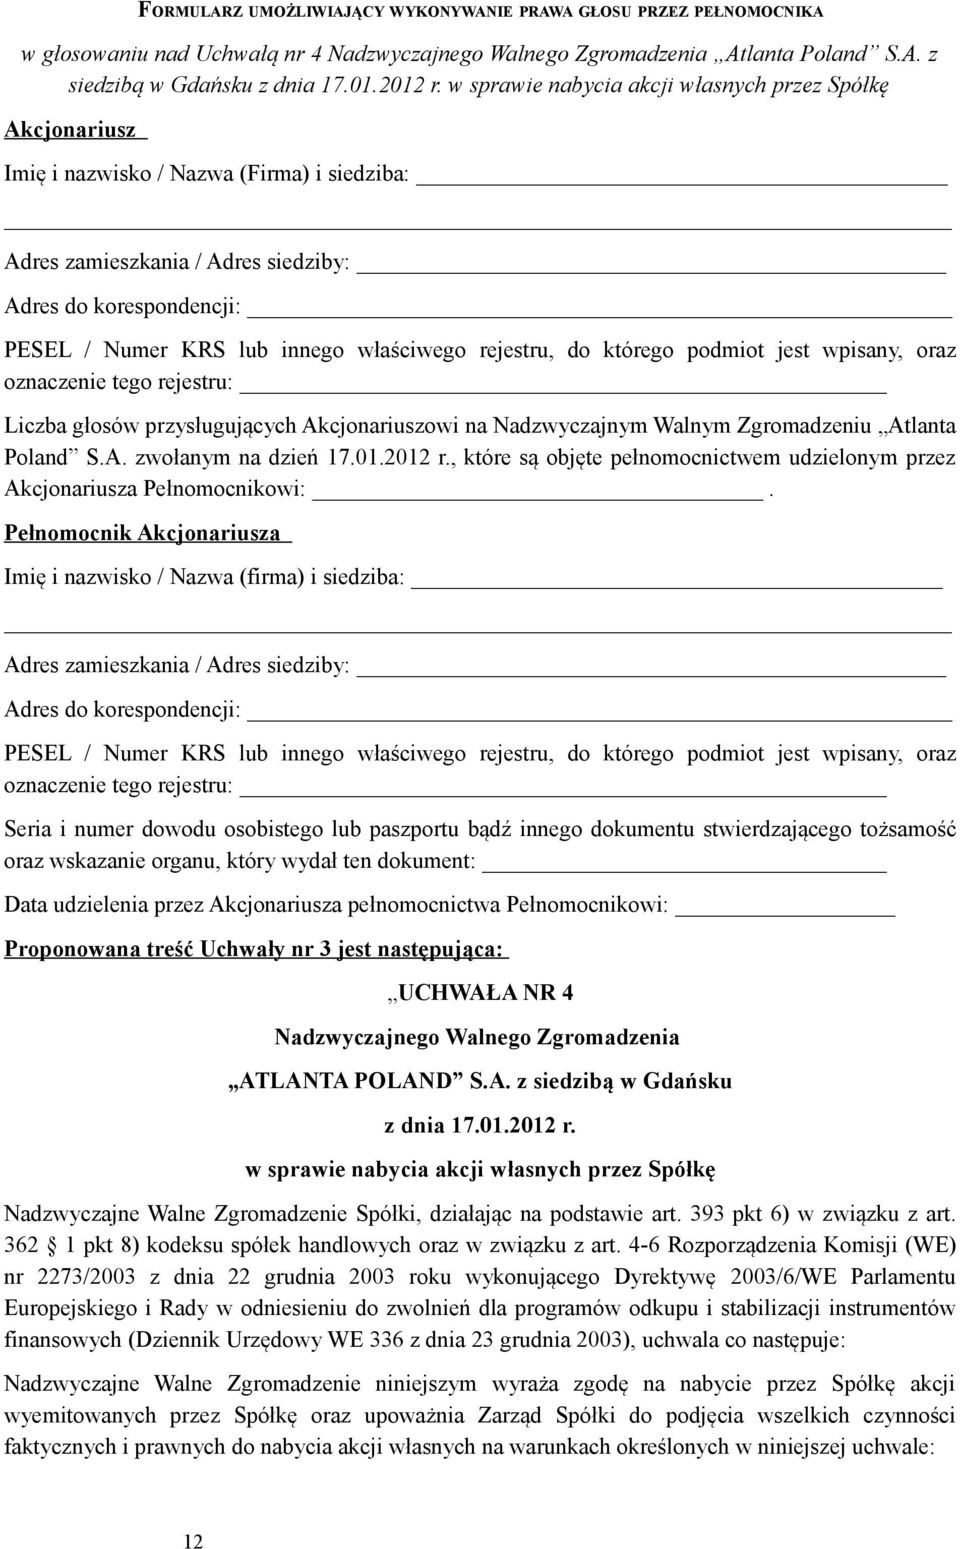 Poland S.A. zwołanym na dzień 17.01.2012 r., które są objęte pełnomocnictwem udzielonym przez Akcjonariusza Pełnomocnikowi:.